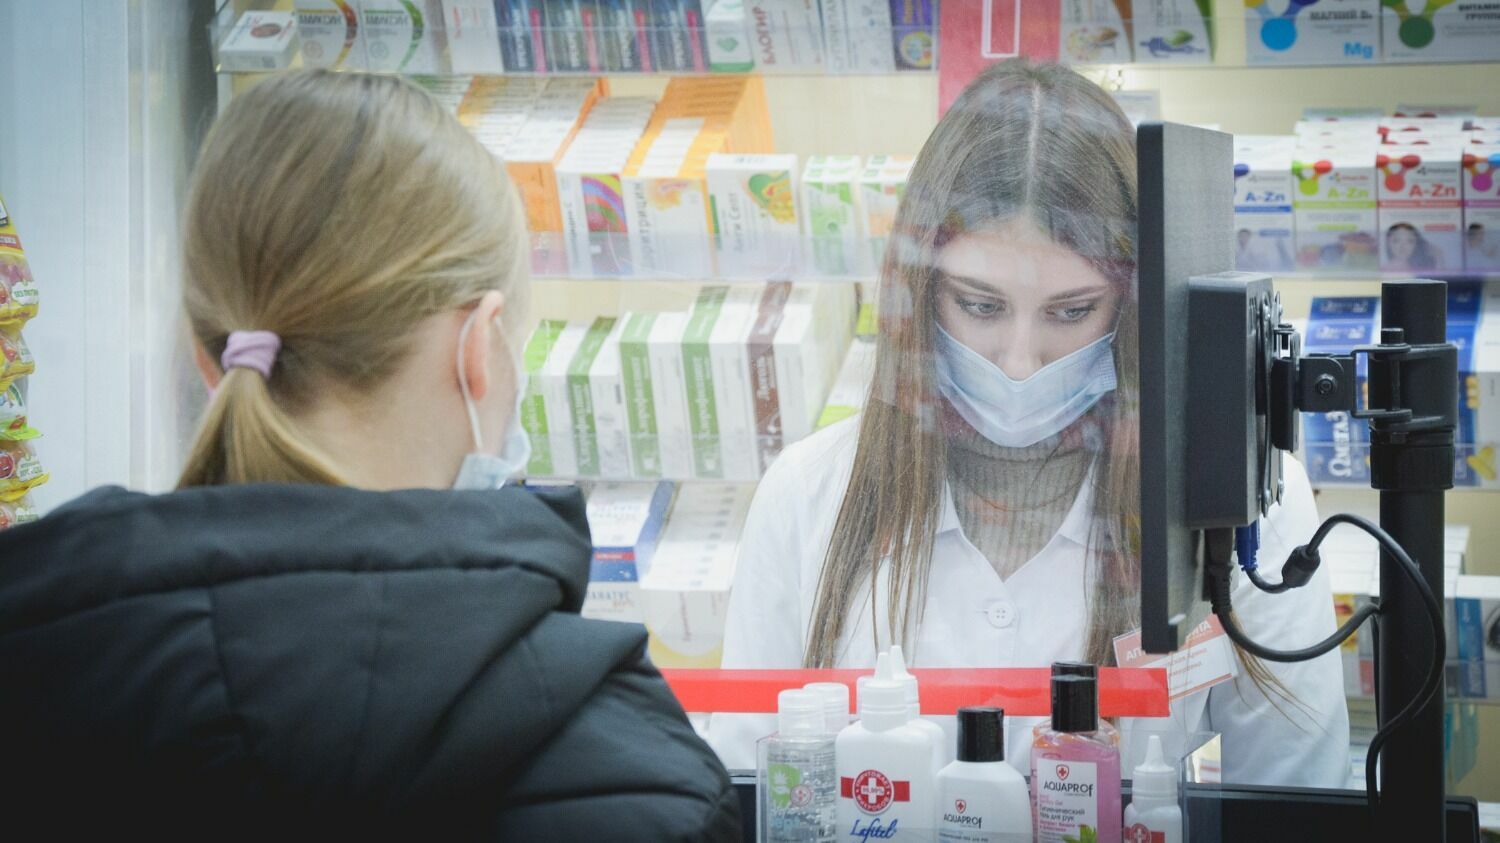 Незамещенных препаратов в аптеках Волгограда по-прежнему много